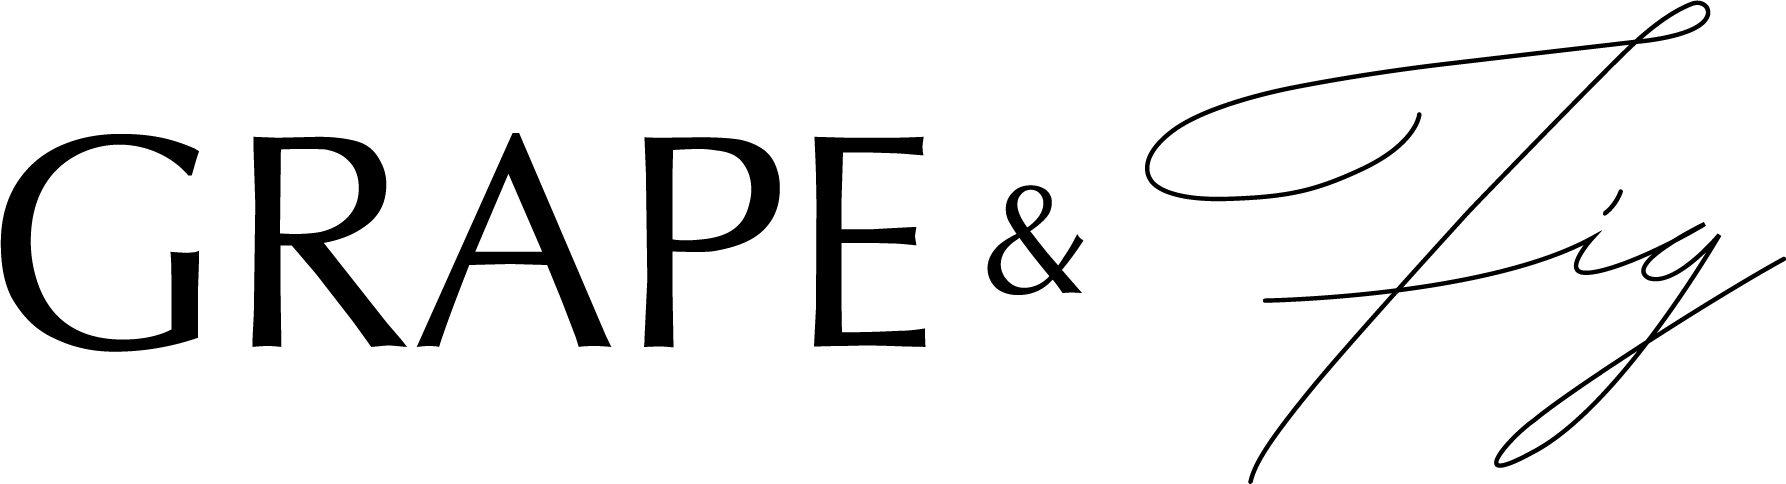 GRAPE & FIG logo